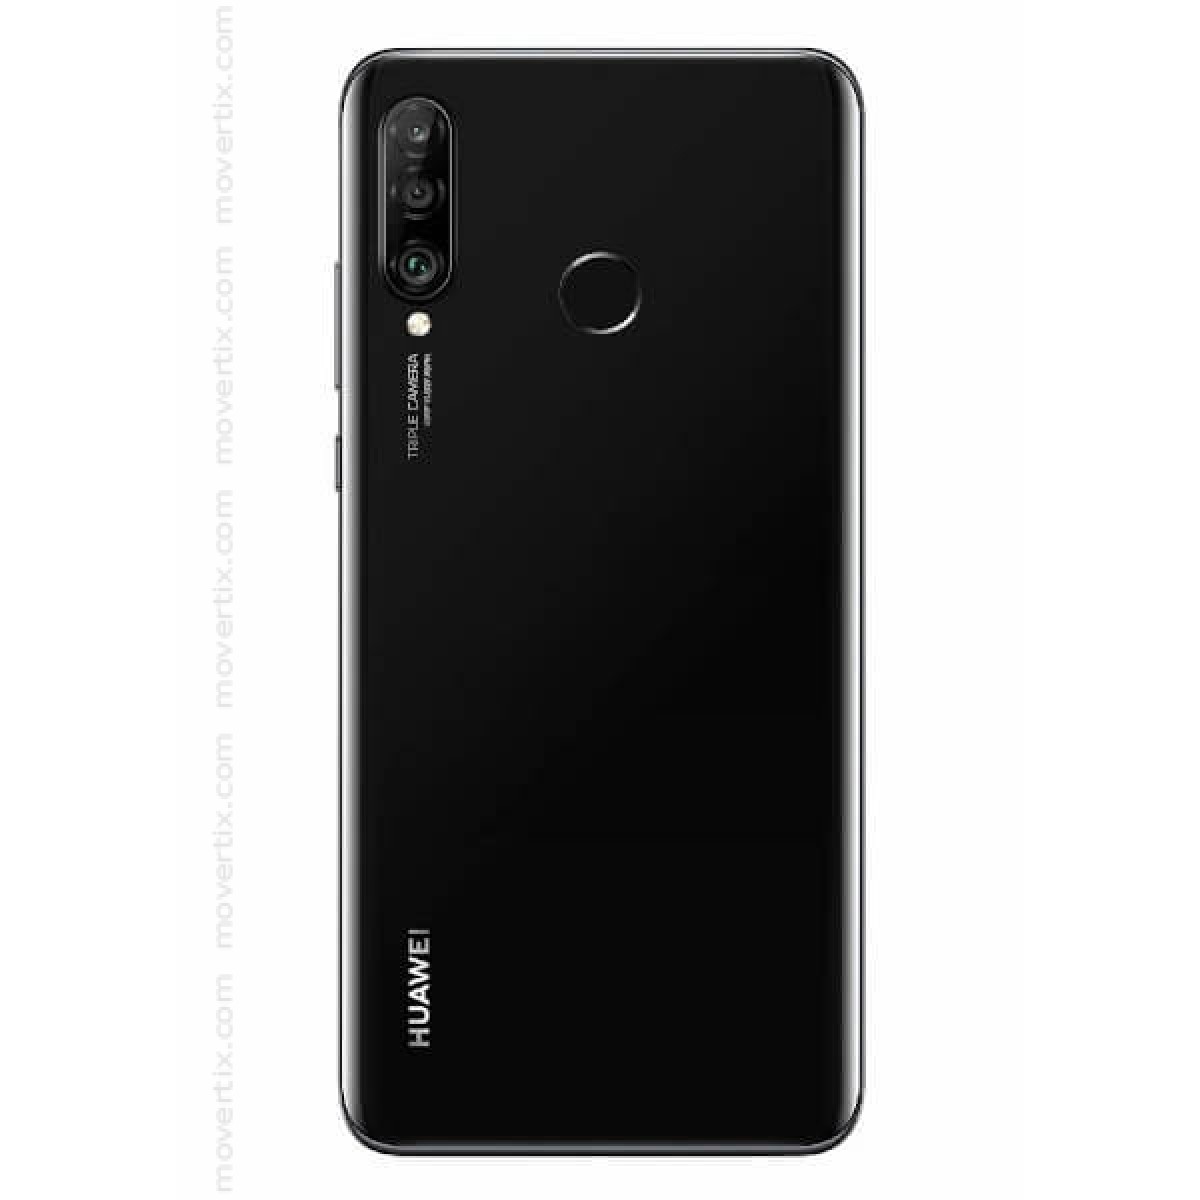 Huawei P30 Lite Dual SIM Midnight Black 128GB and 4GB RAM - MAR-LX1A  (6901443290840)